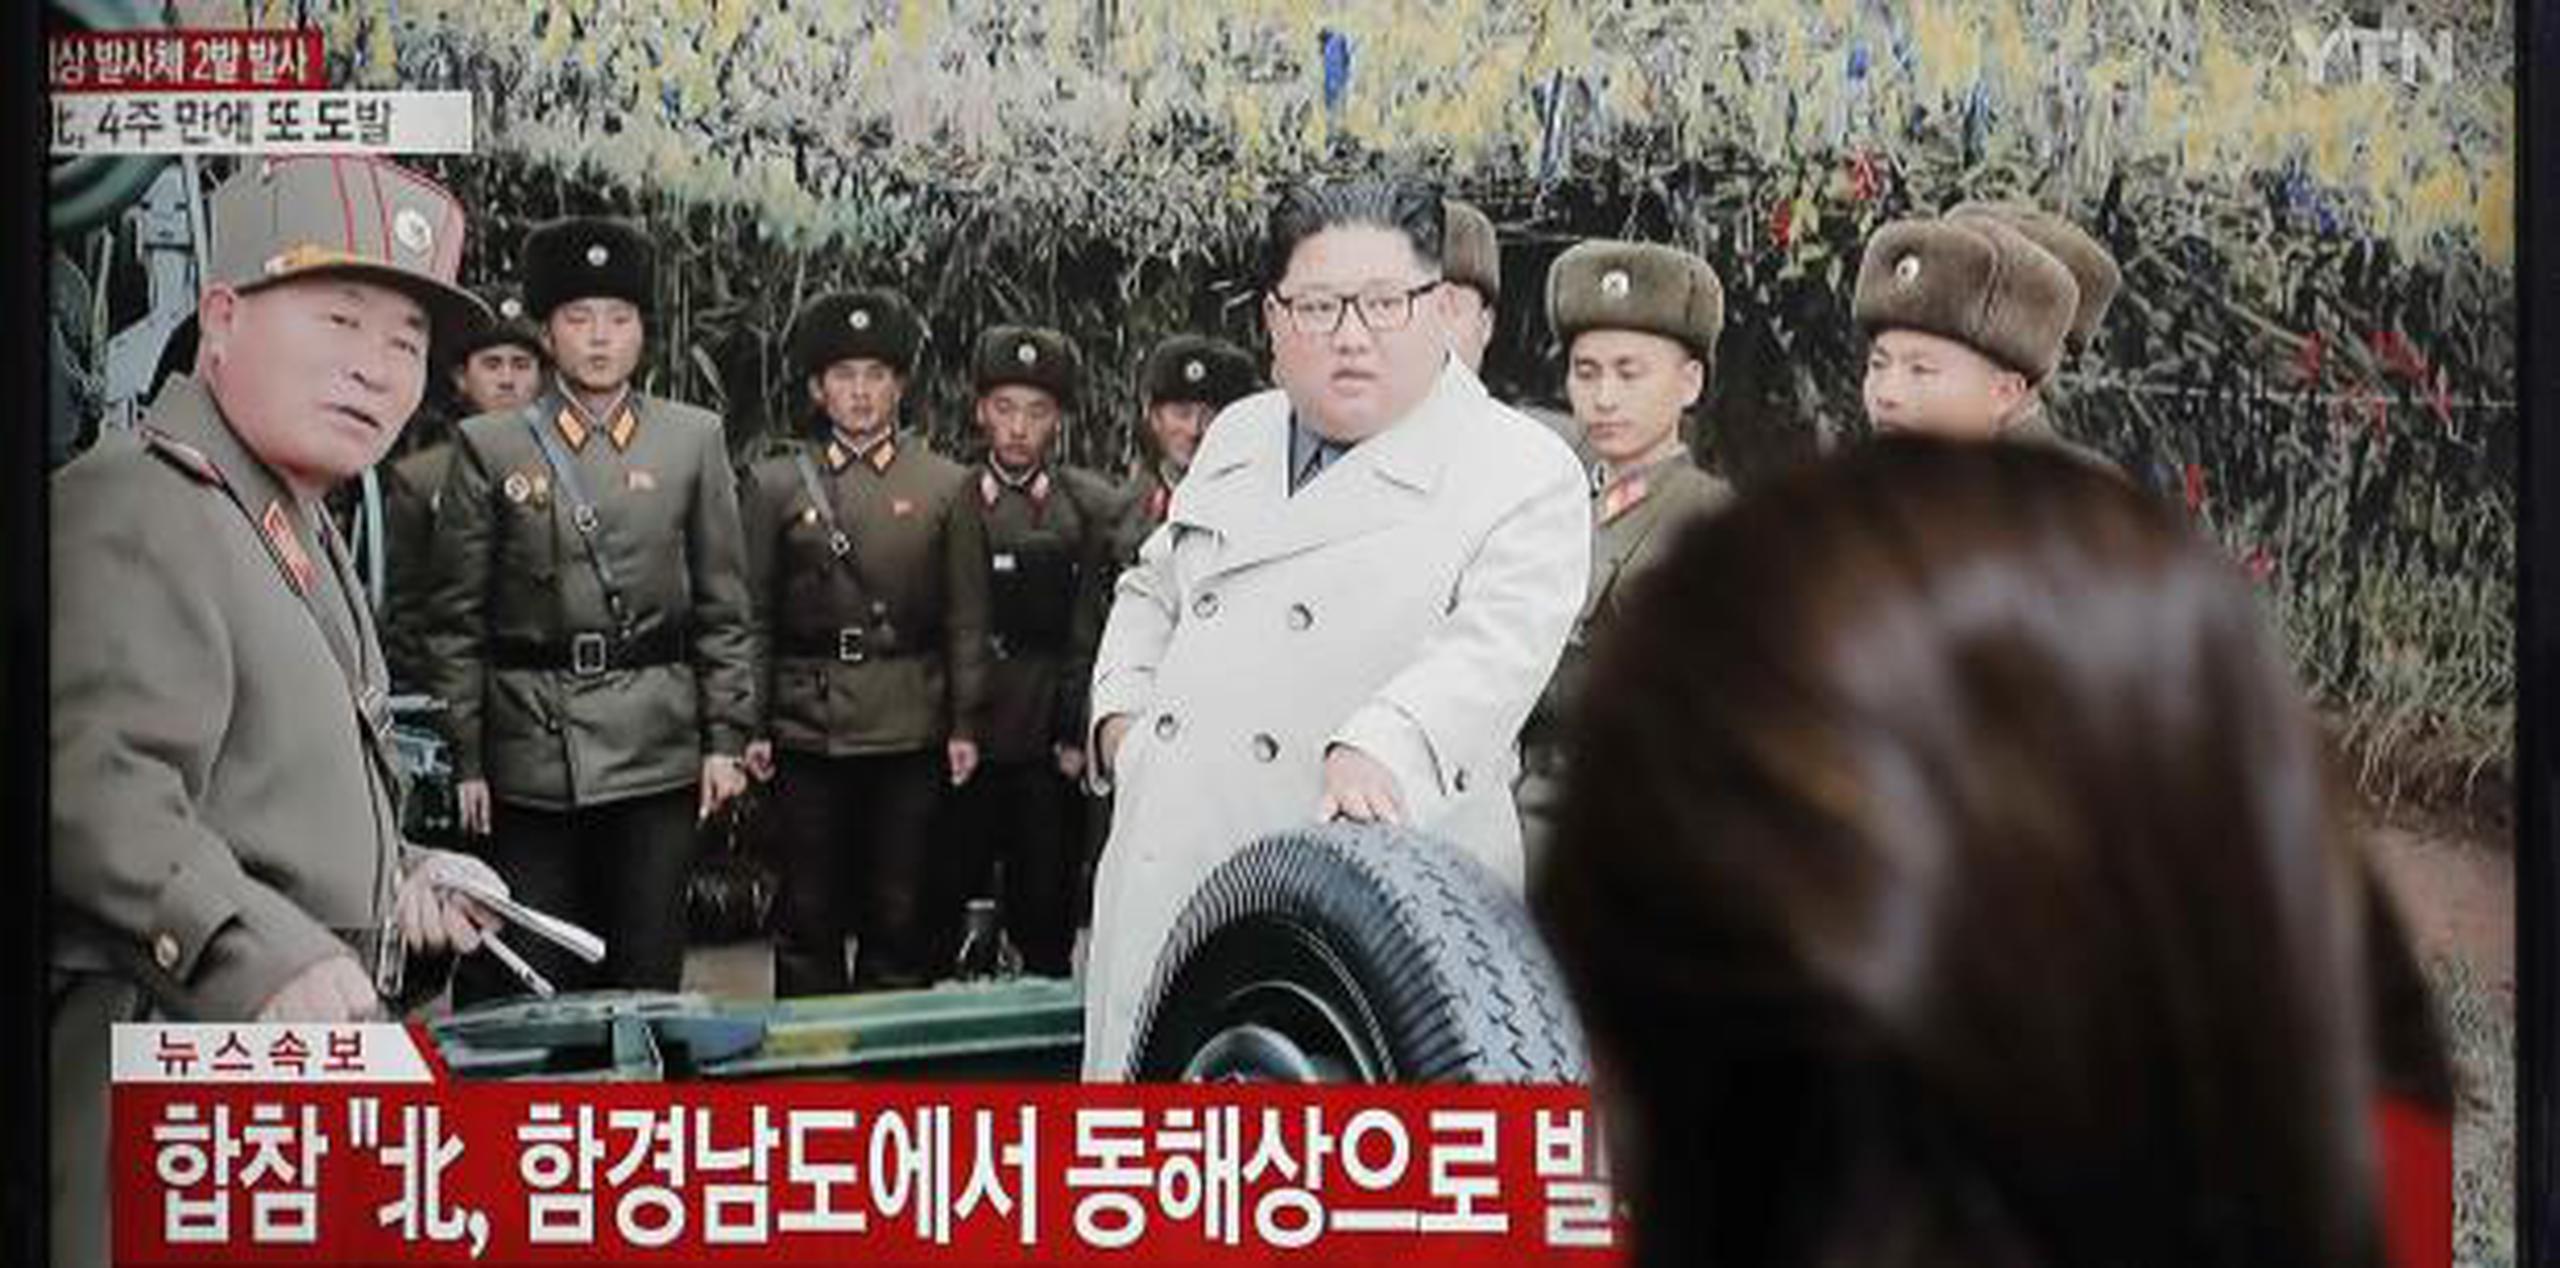 Corea del Norte dijo el lunes que su líder, Kim Jong Un, visitó un islote en el frente y ordenó a las tropas de artillería destinadas allí que practicasen tiro cerca de la frontera marítima. (AP / Lee Jin-man)